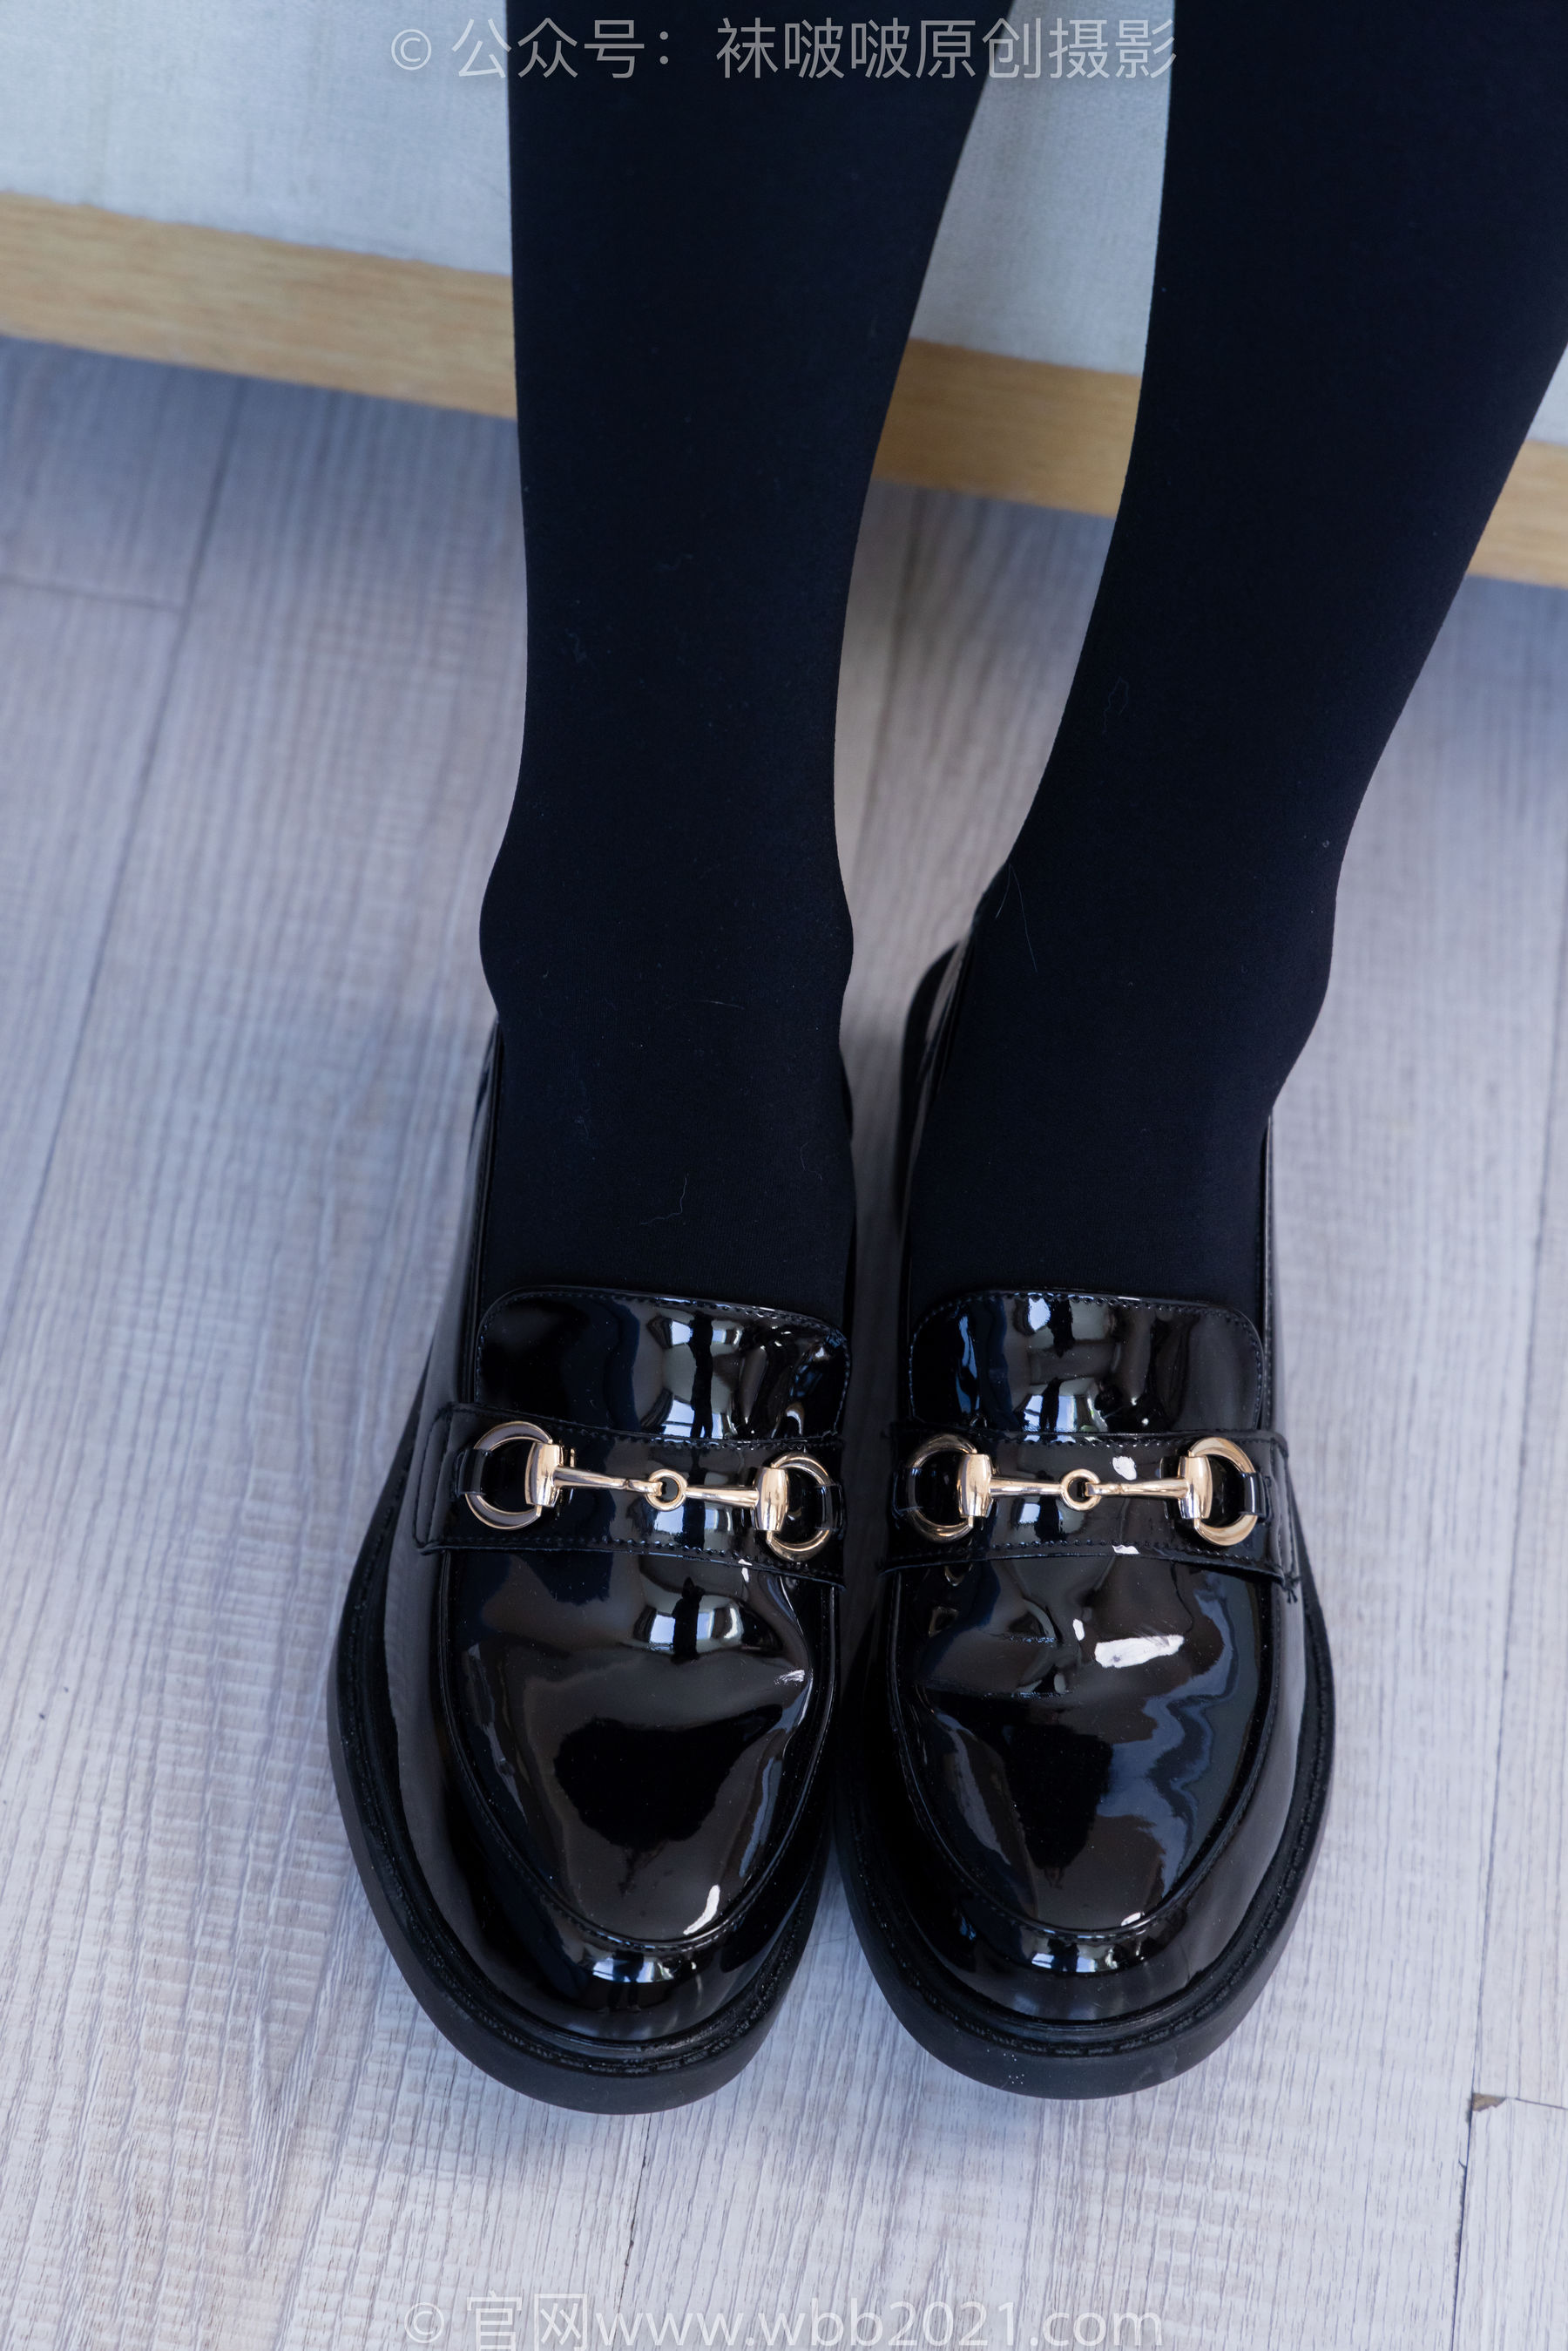 袜啵啵 No.313 芝士 -皮鞋、平底鞋、厚黑丝、厚黑丝大腿袜/(150P)